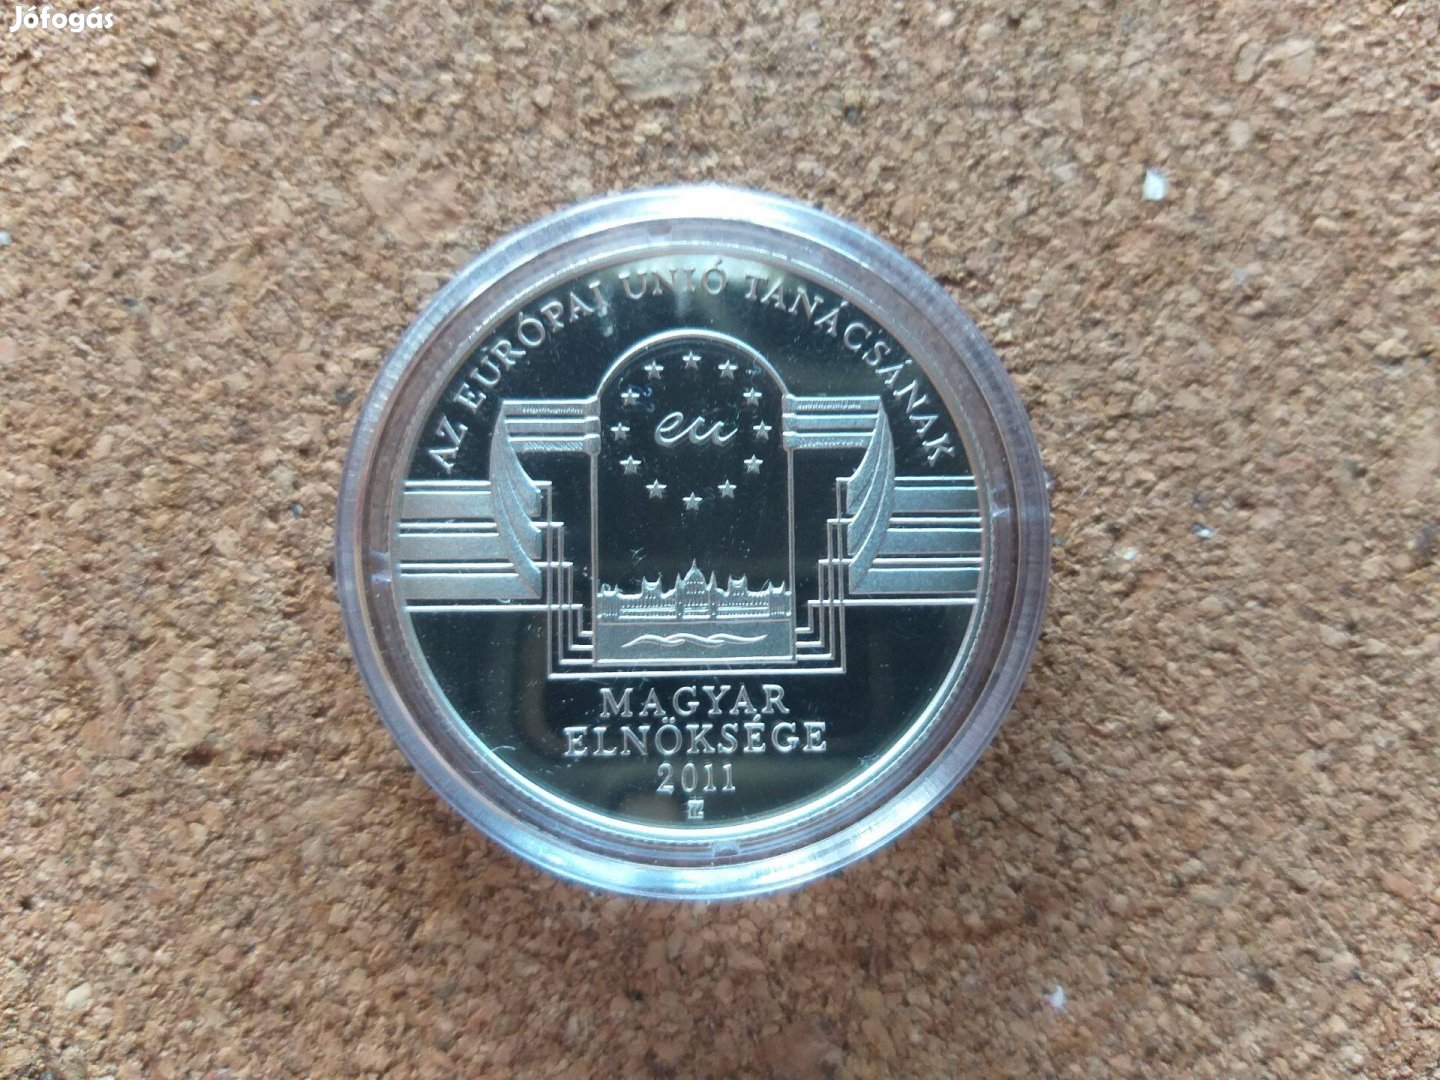 2011 Európa Tanács magyar elnöksége PP UNC ezüst érme eladó !